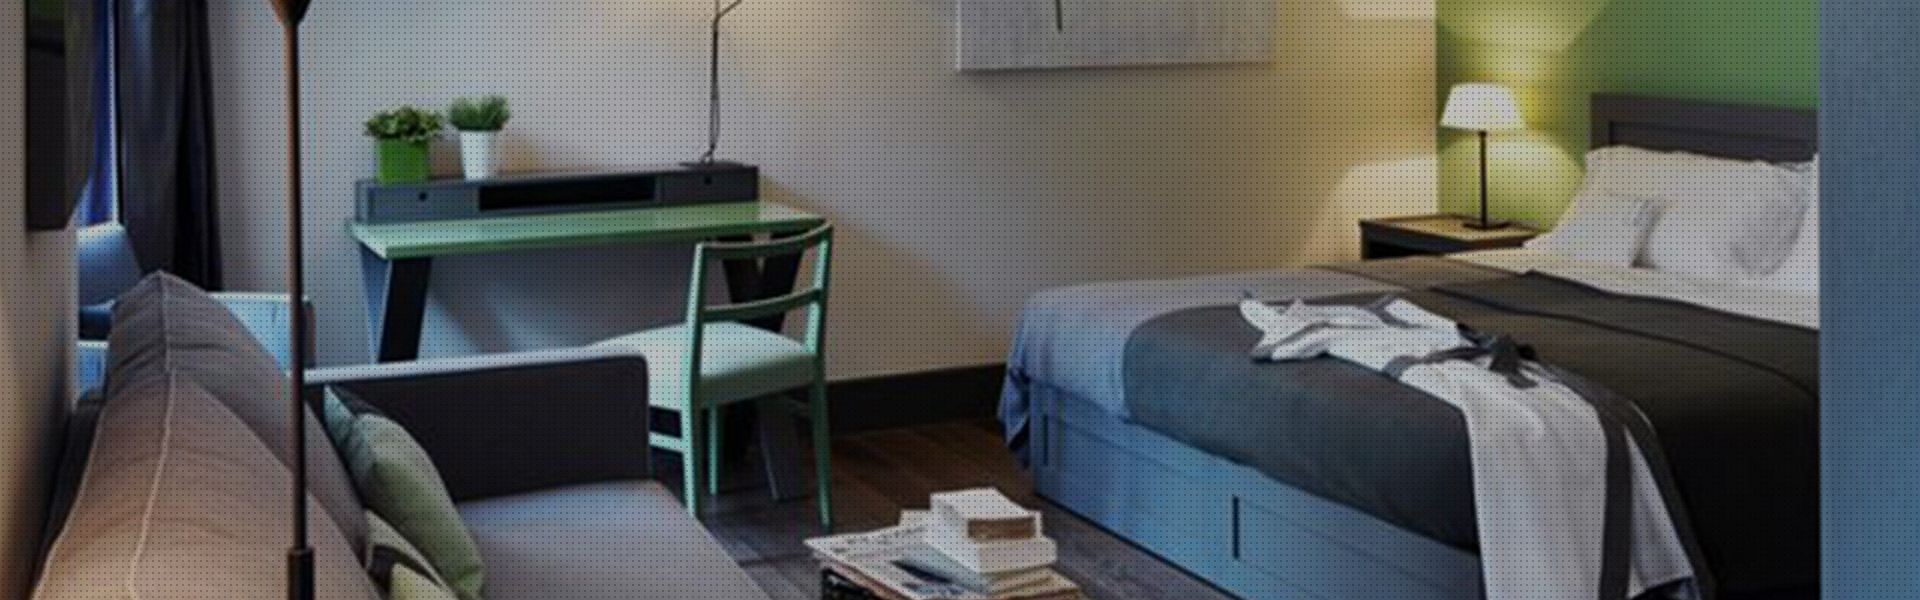 Nuova Artigiana Legno - Arredamento personalizzato camere Hotel